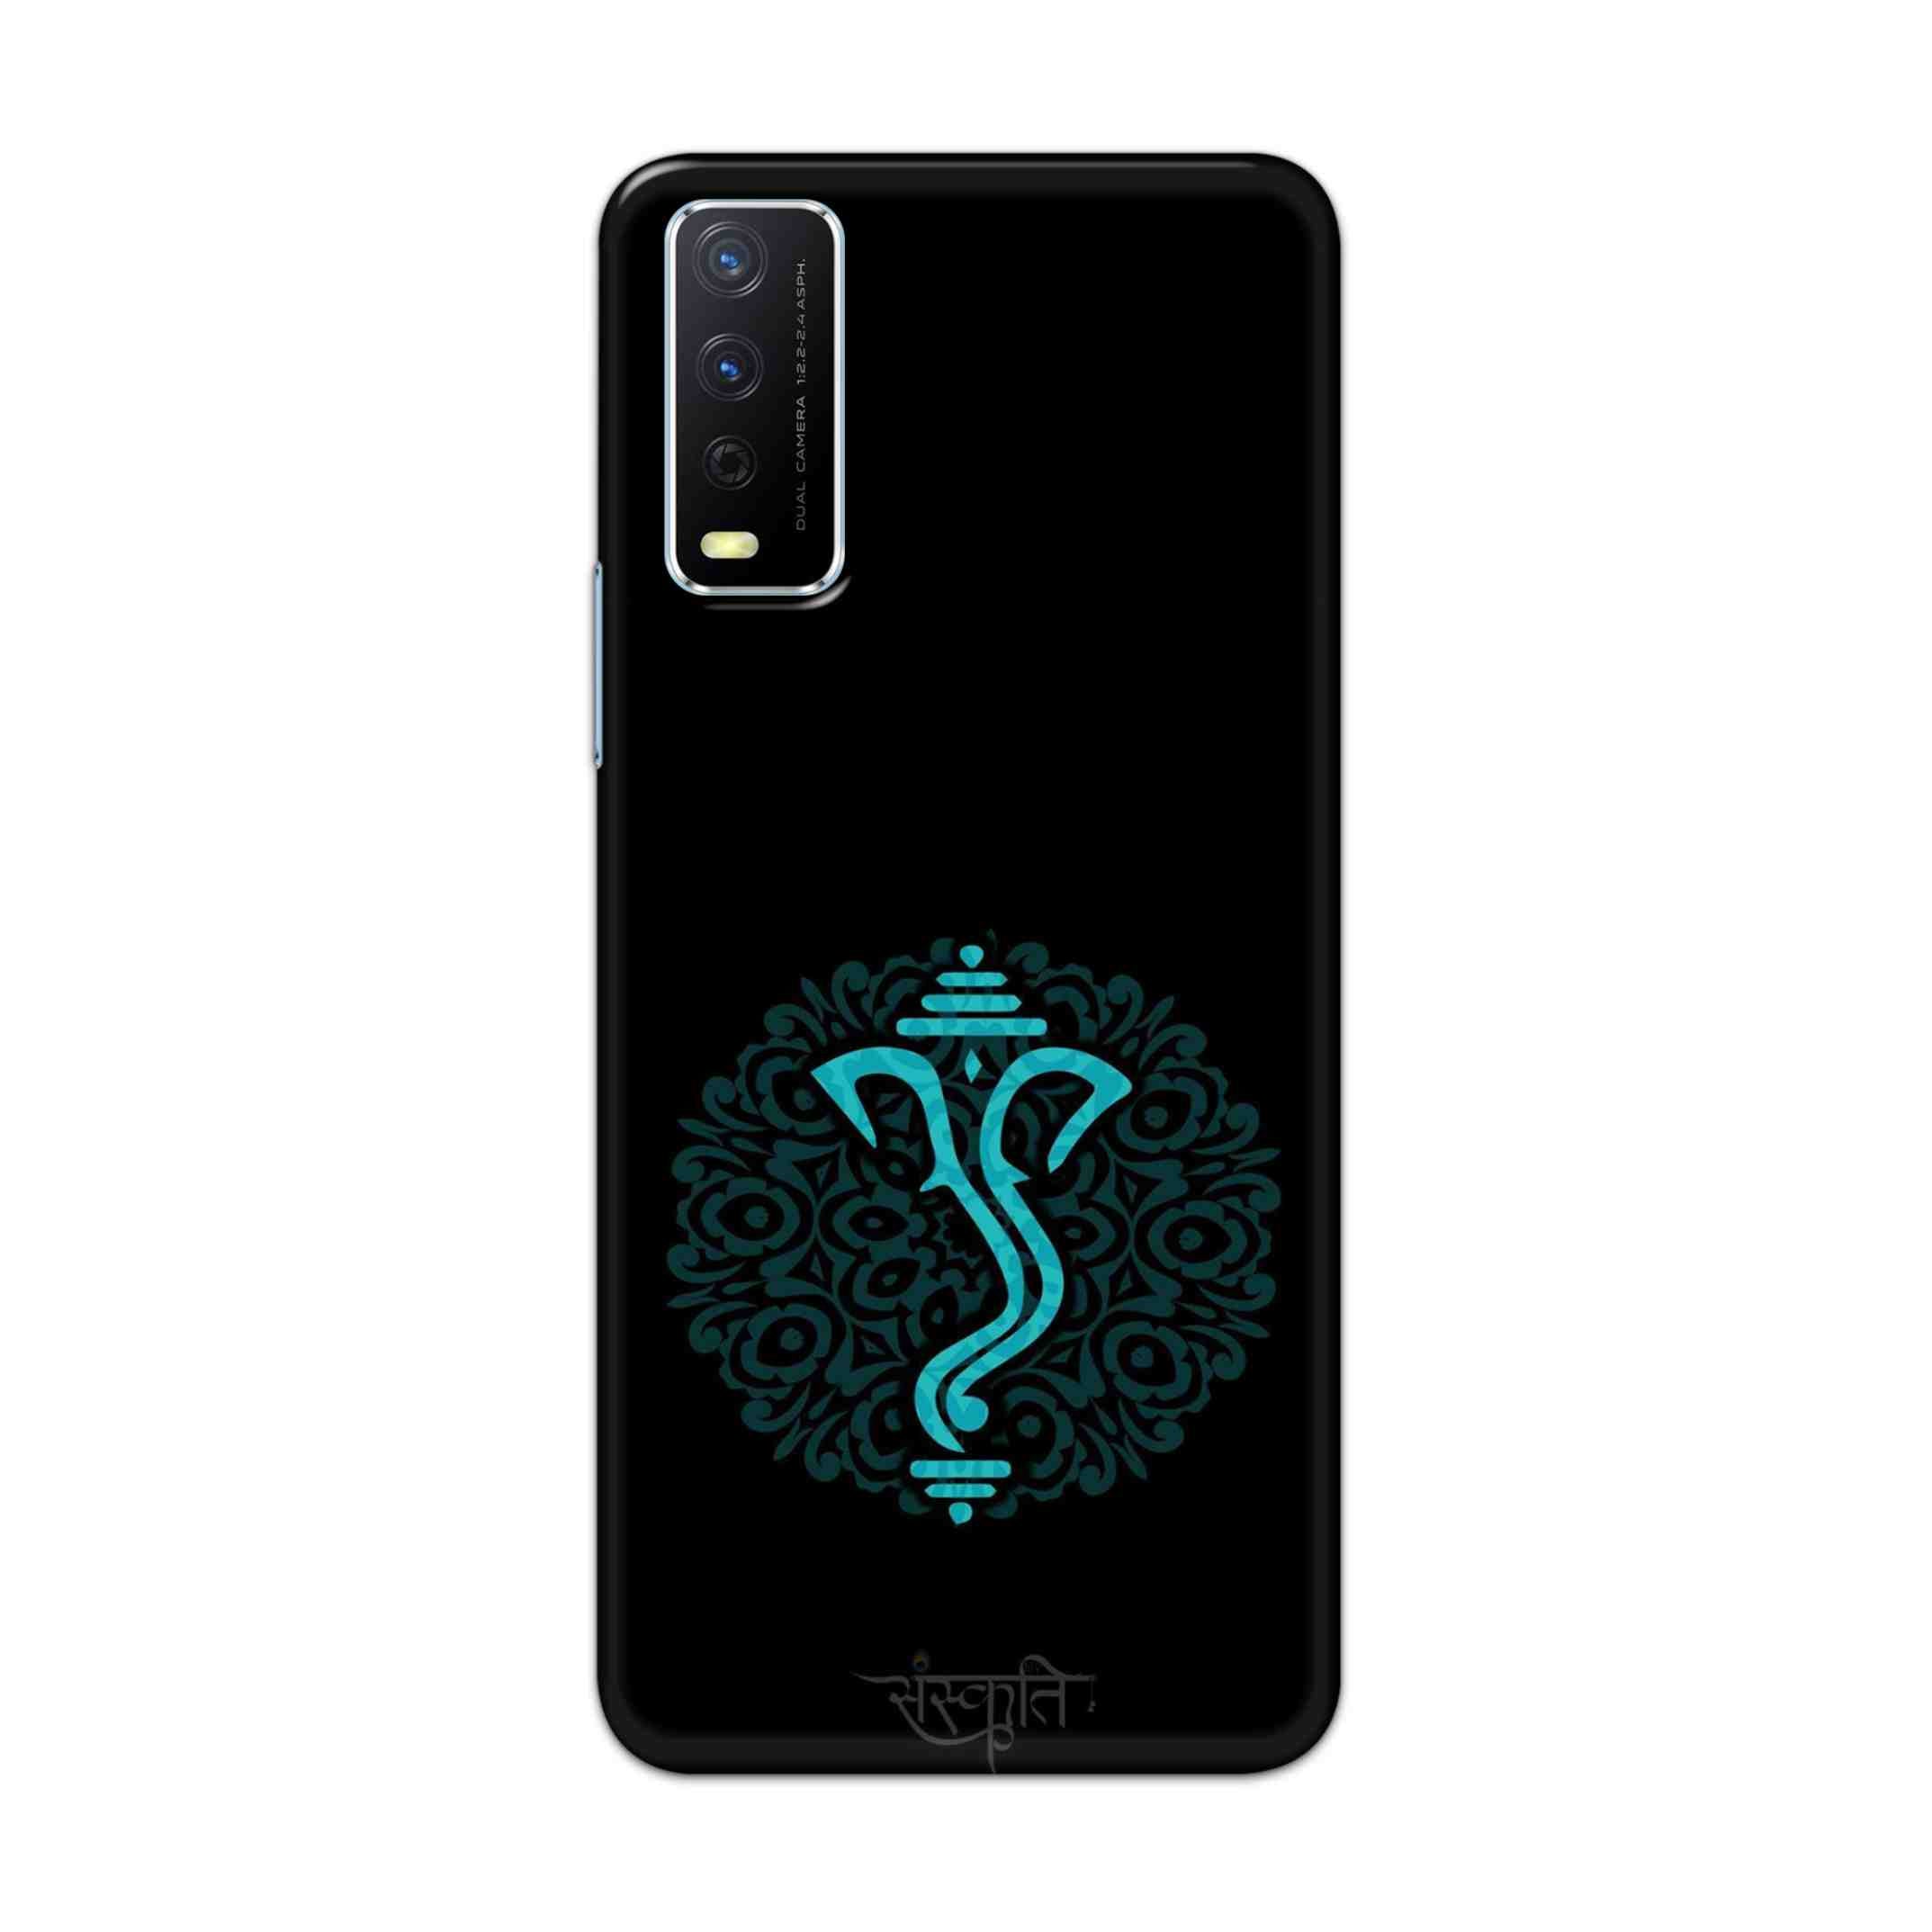 Buy Ganpati Bappa Hard Back Mobile Phone Case Cover For Vivo Y12s Online